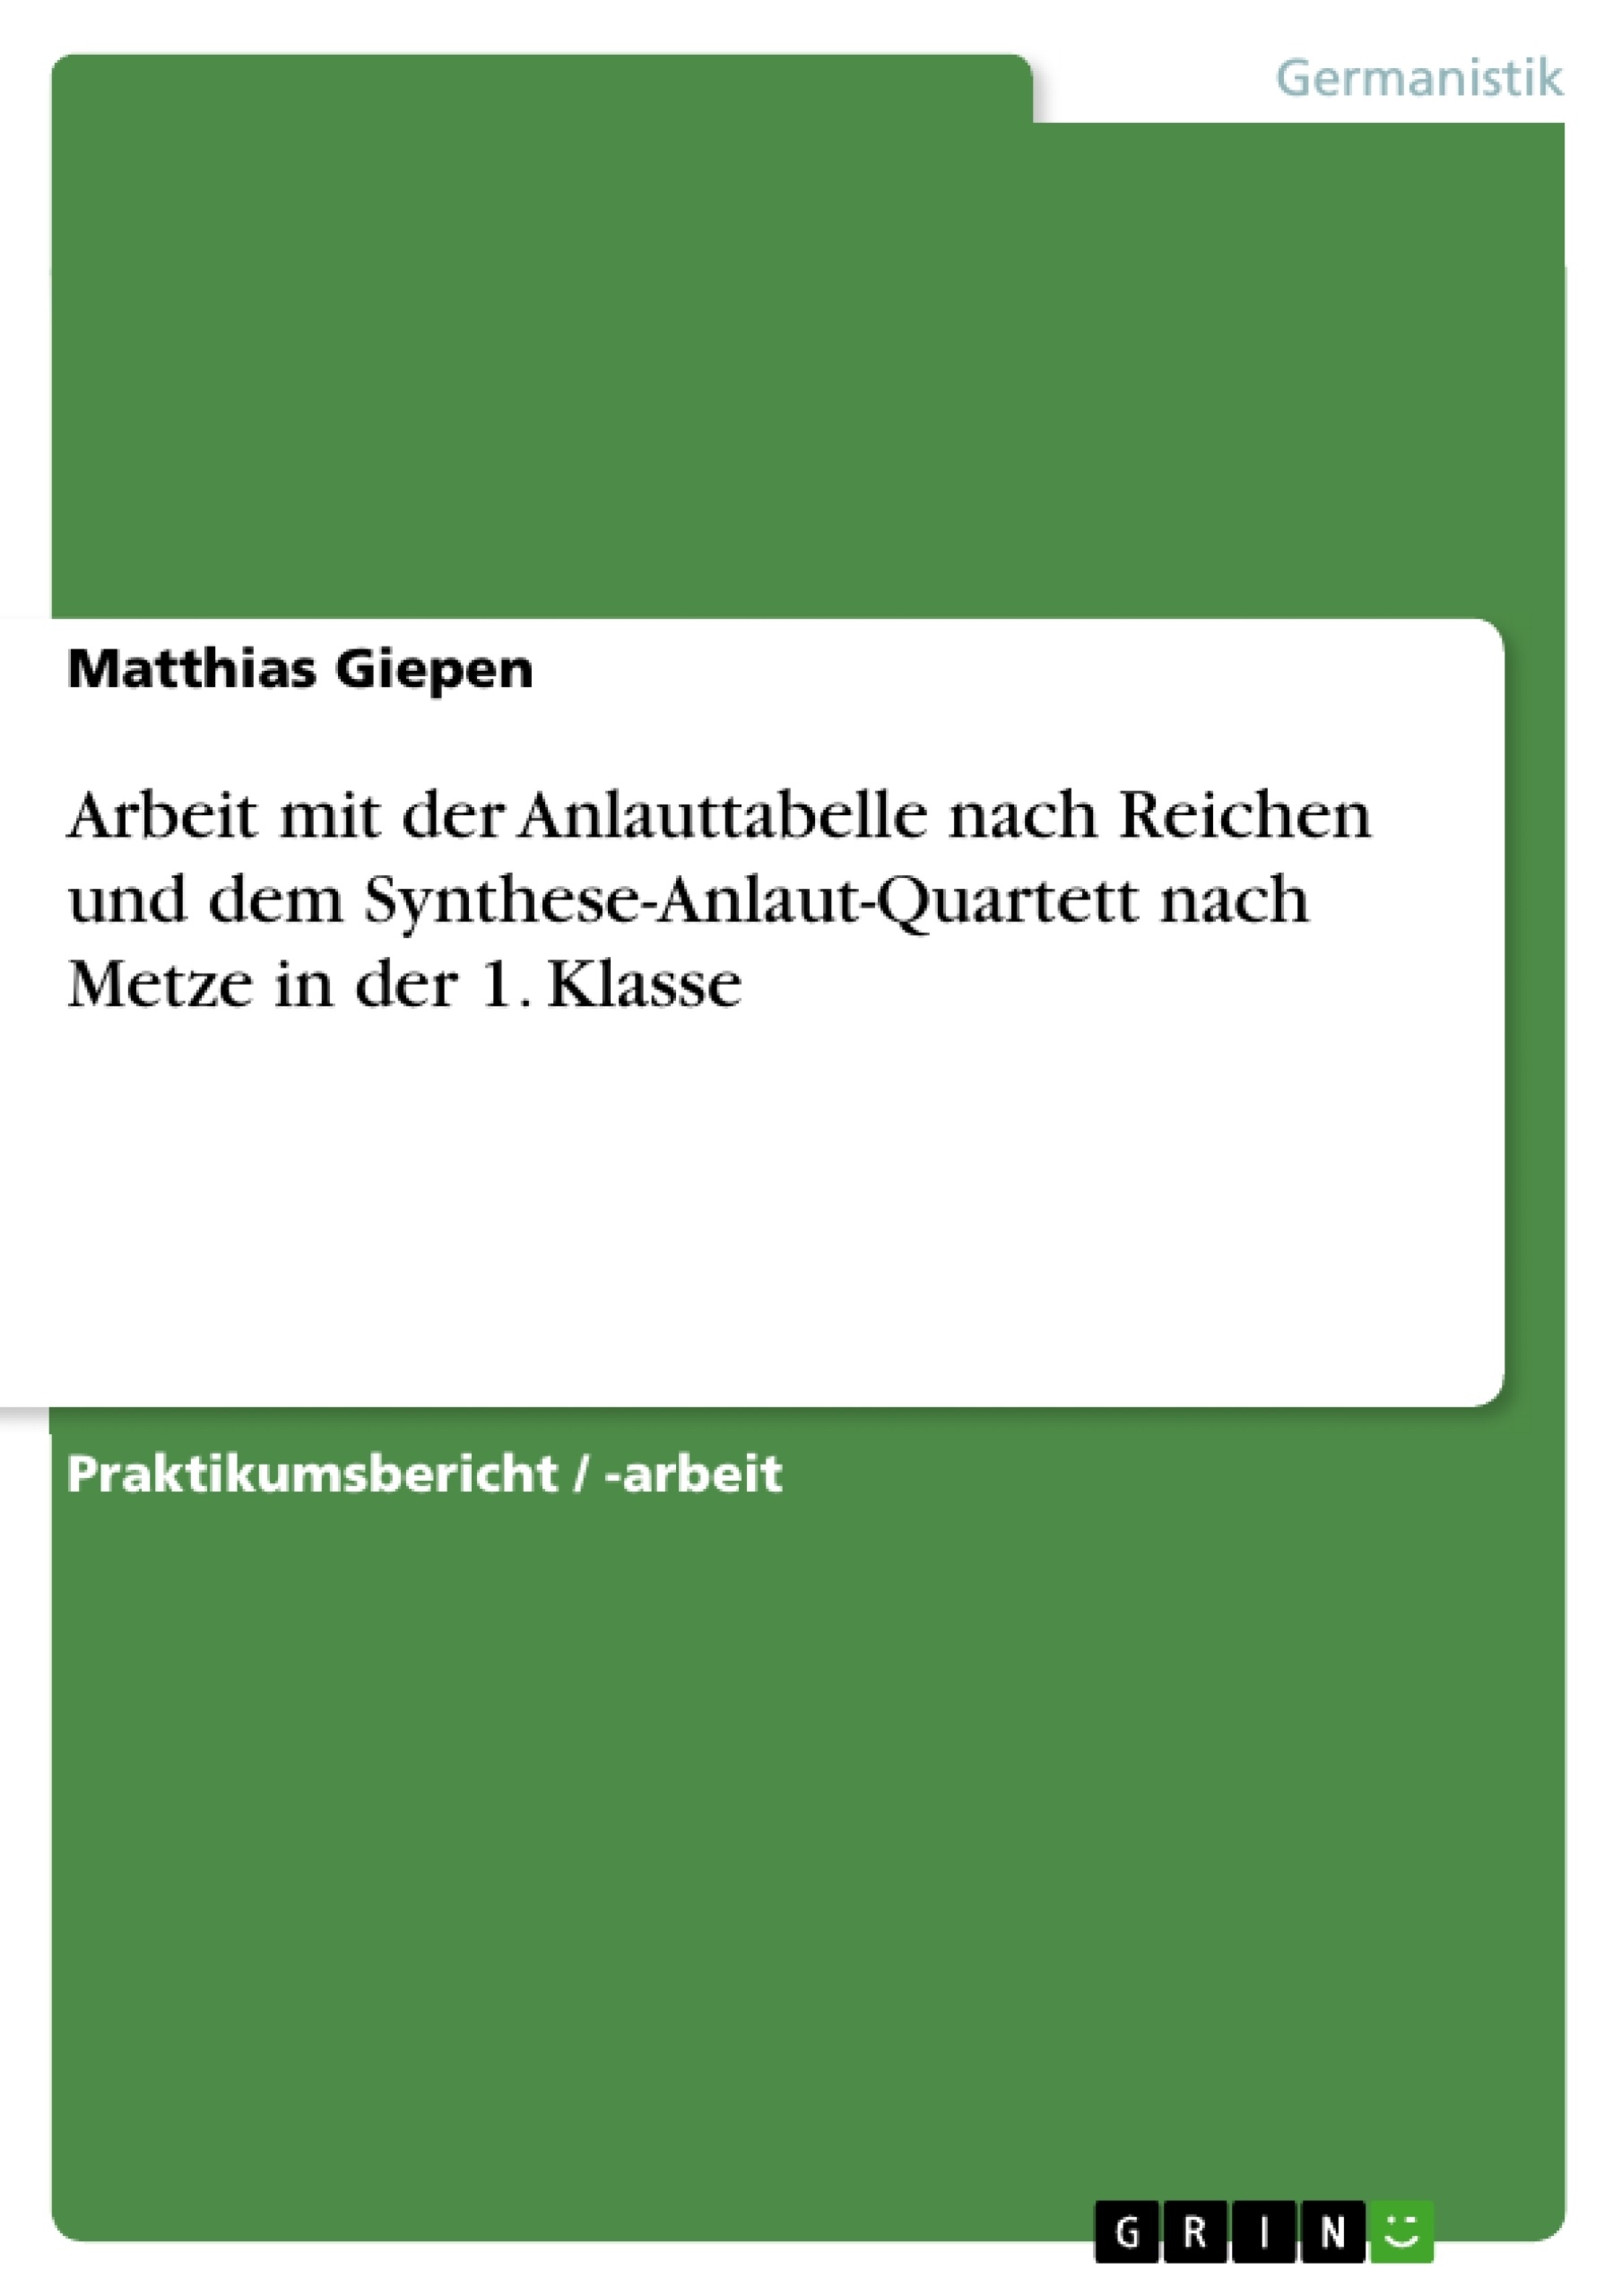 Título: Arbeit mit der Anlauttabelle nach Reichen und dem Synthese-Anlaut-Quartett nach Metze in der 1. Klasse